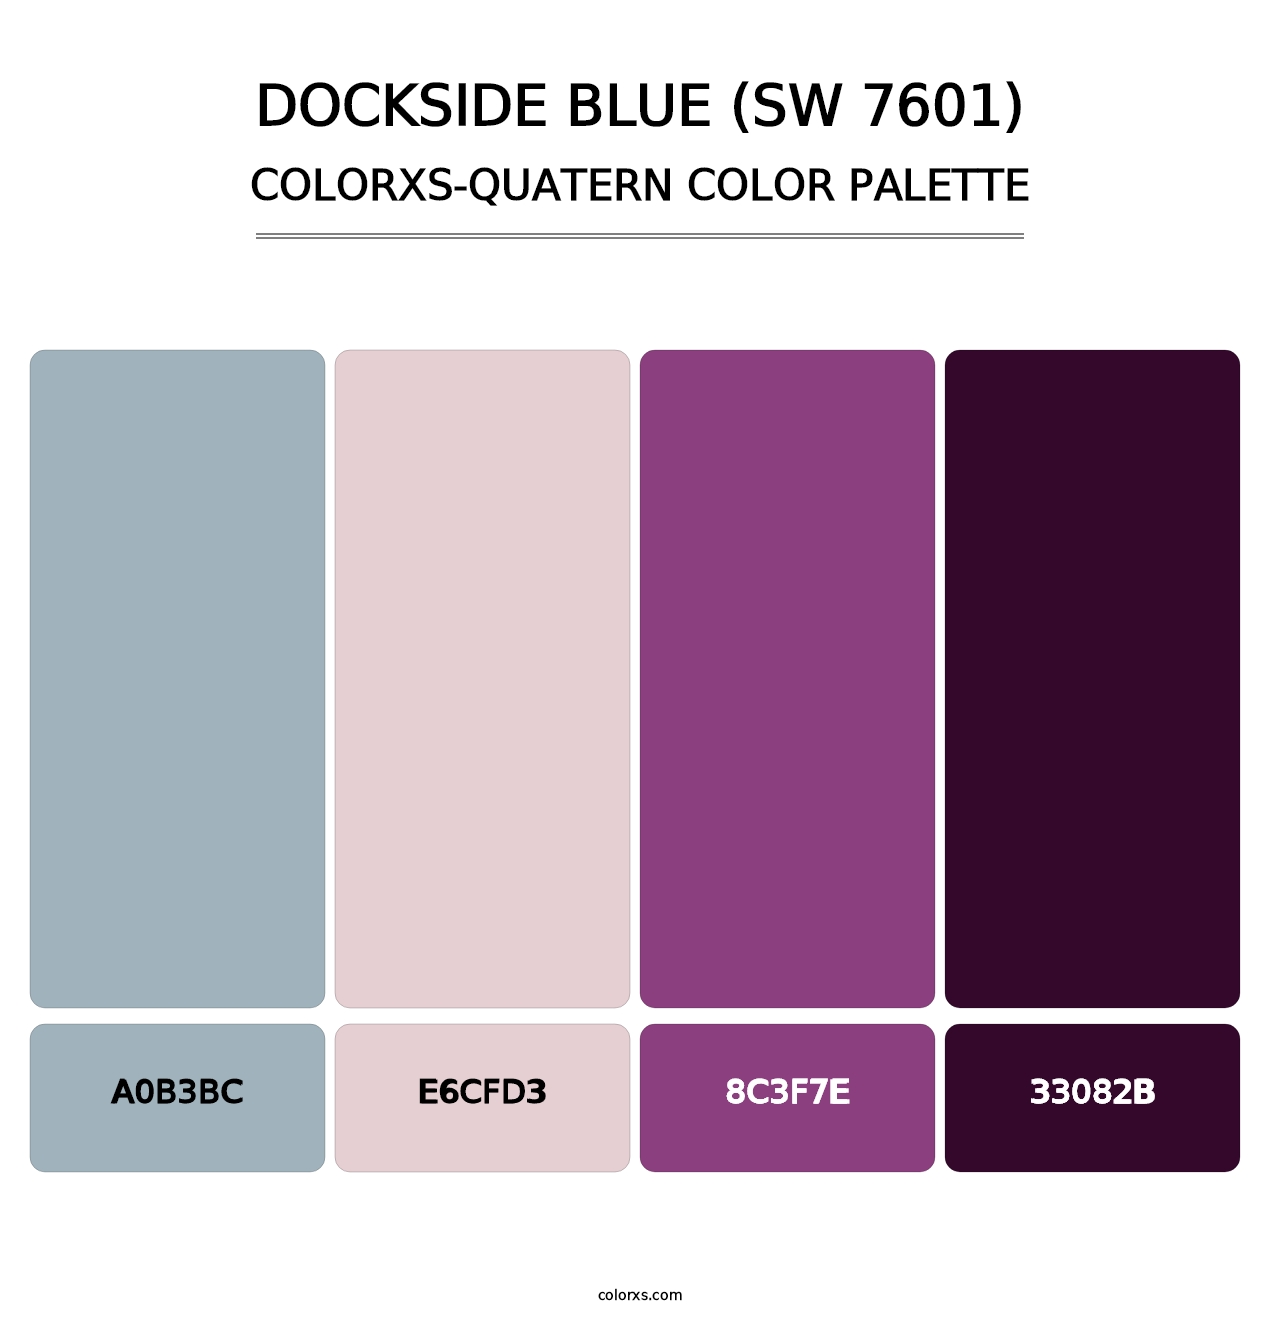 Dockside Blue (SW 7601) - Colorxs Quatern Palette